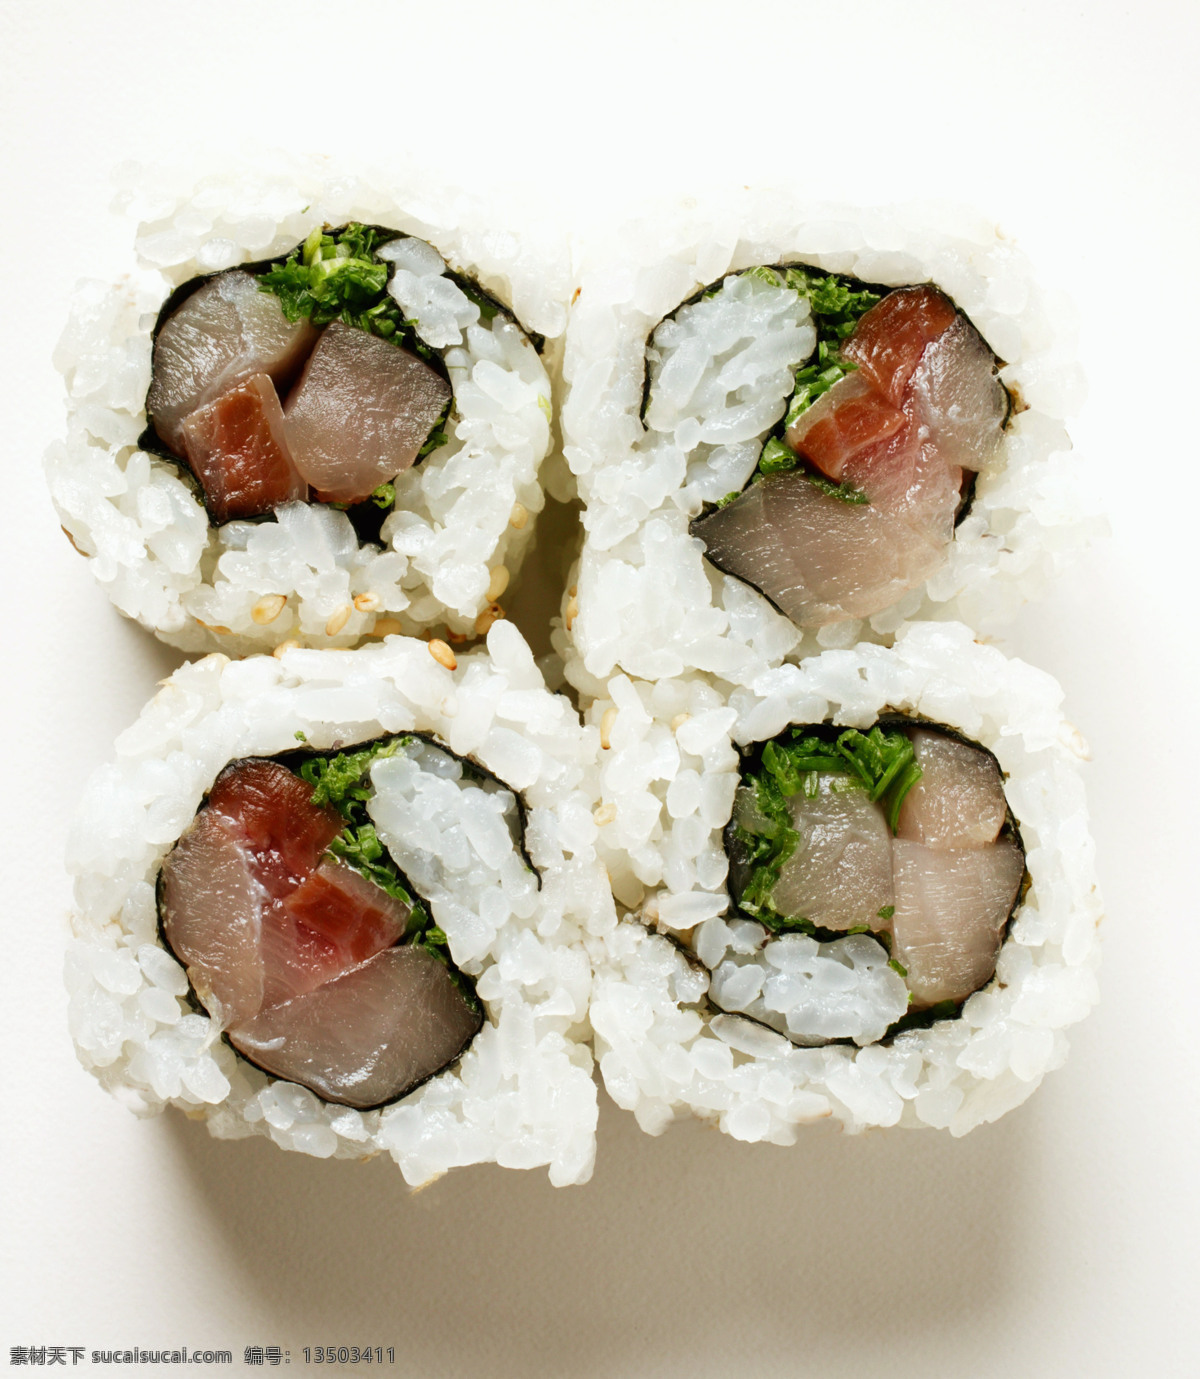 寿司 寿司图片 美食 美味 日本美食 外国美食 餐饮美食